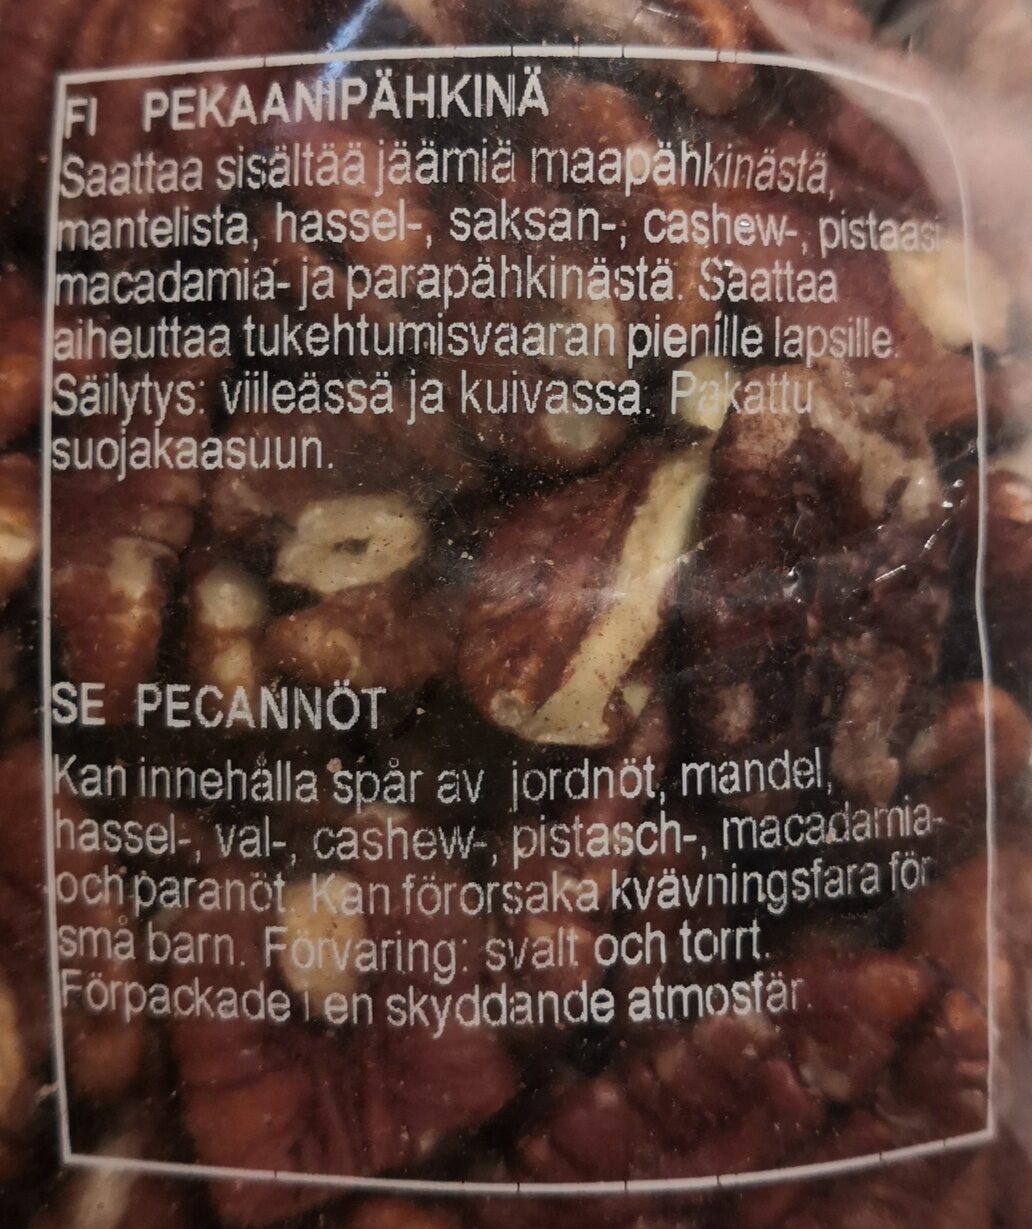 Pekaanipähkinä - Ainesosat